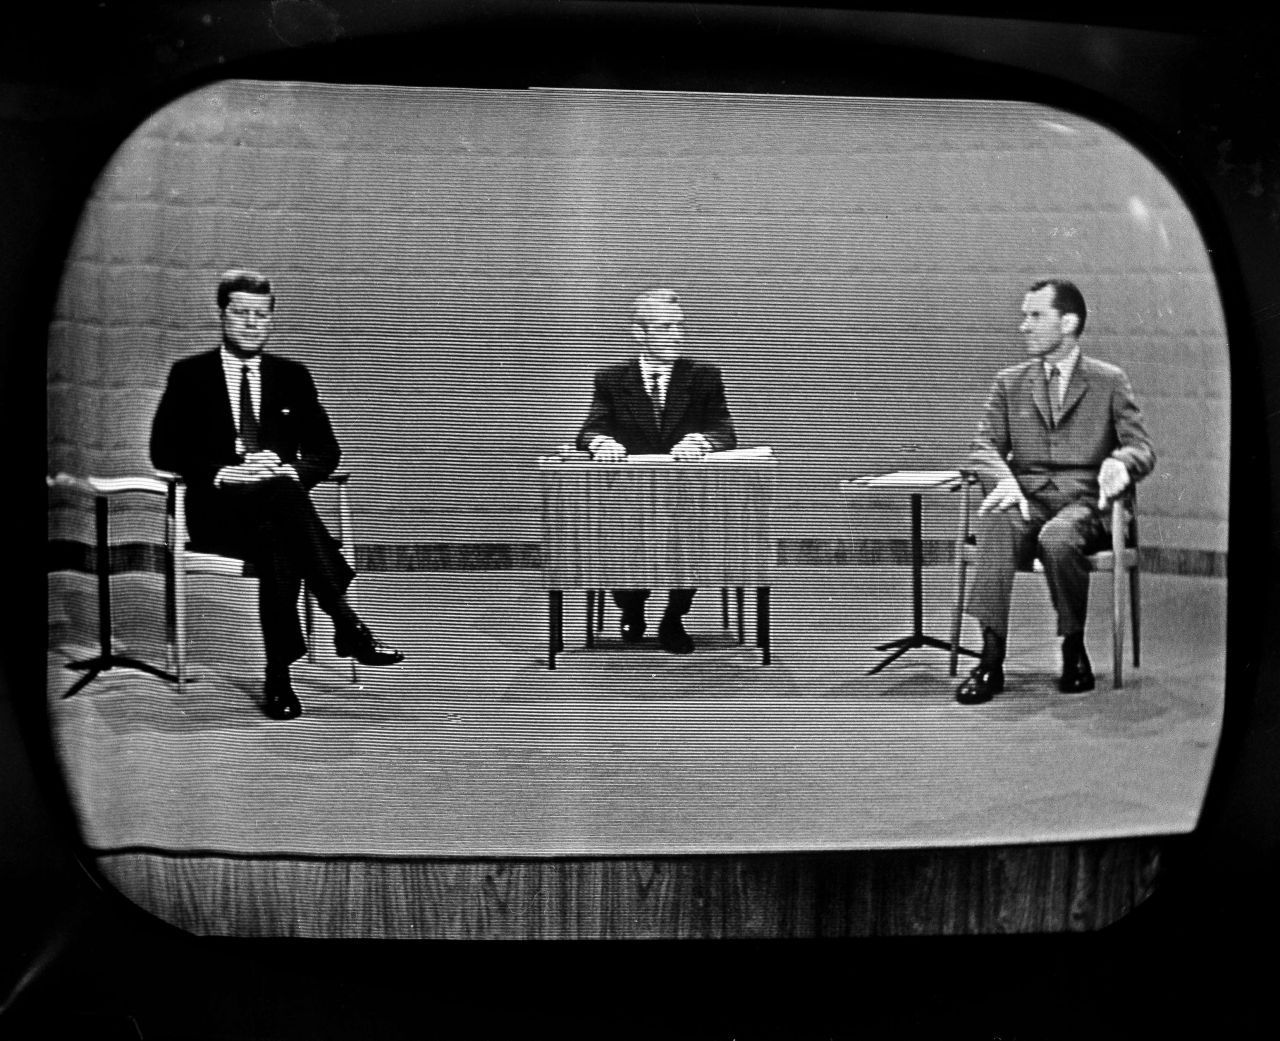 1960 fand das erste TV-Duell statt - zwischen dem damaligen Vizepräsidenten Richard Nixon und dem Demokraten John F. Kennedy (links im Bild). Nixon war körperlich erschöpft, das sahen ihm die Zuschauer an. Sein Kontrahent, der jugendlich wirkende Kennedy, gewann schließlich auch die Präsidentschaftswahl.